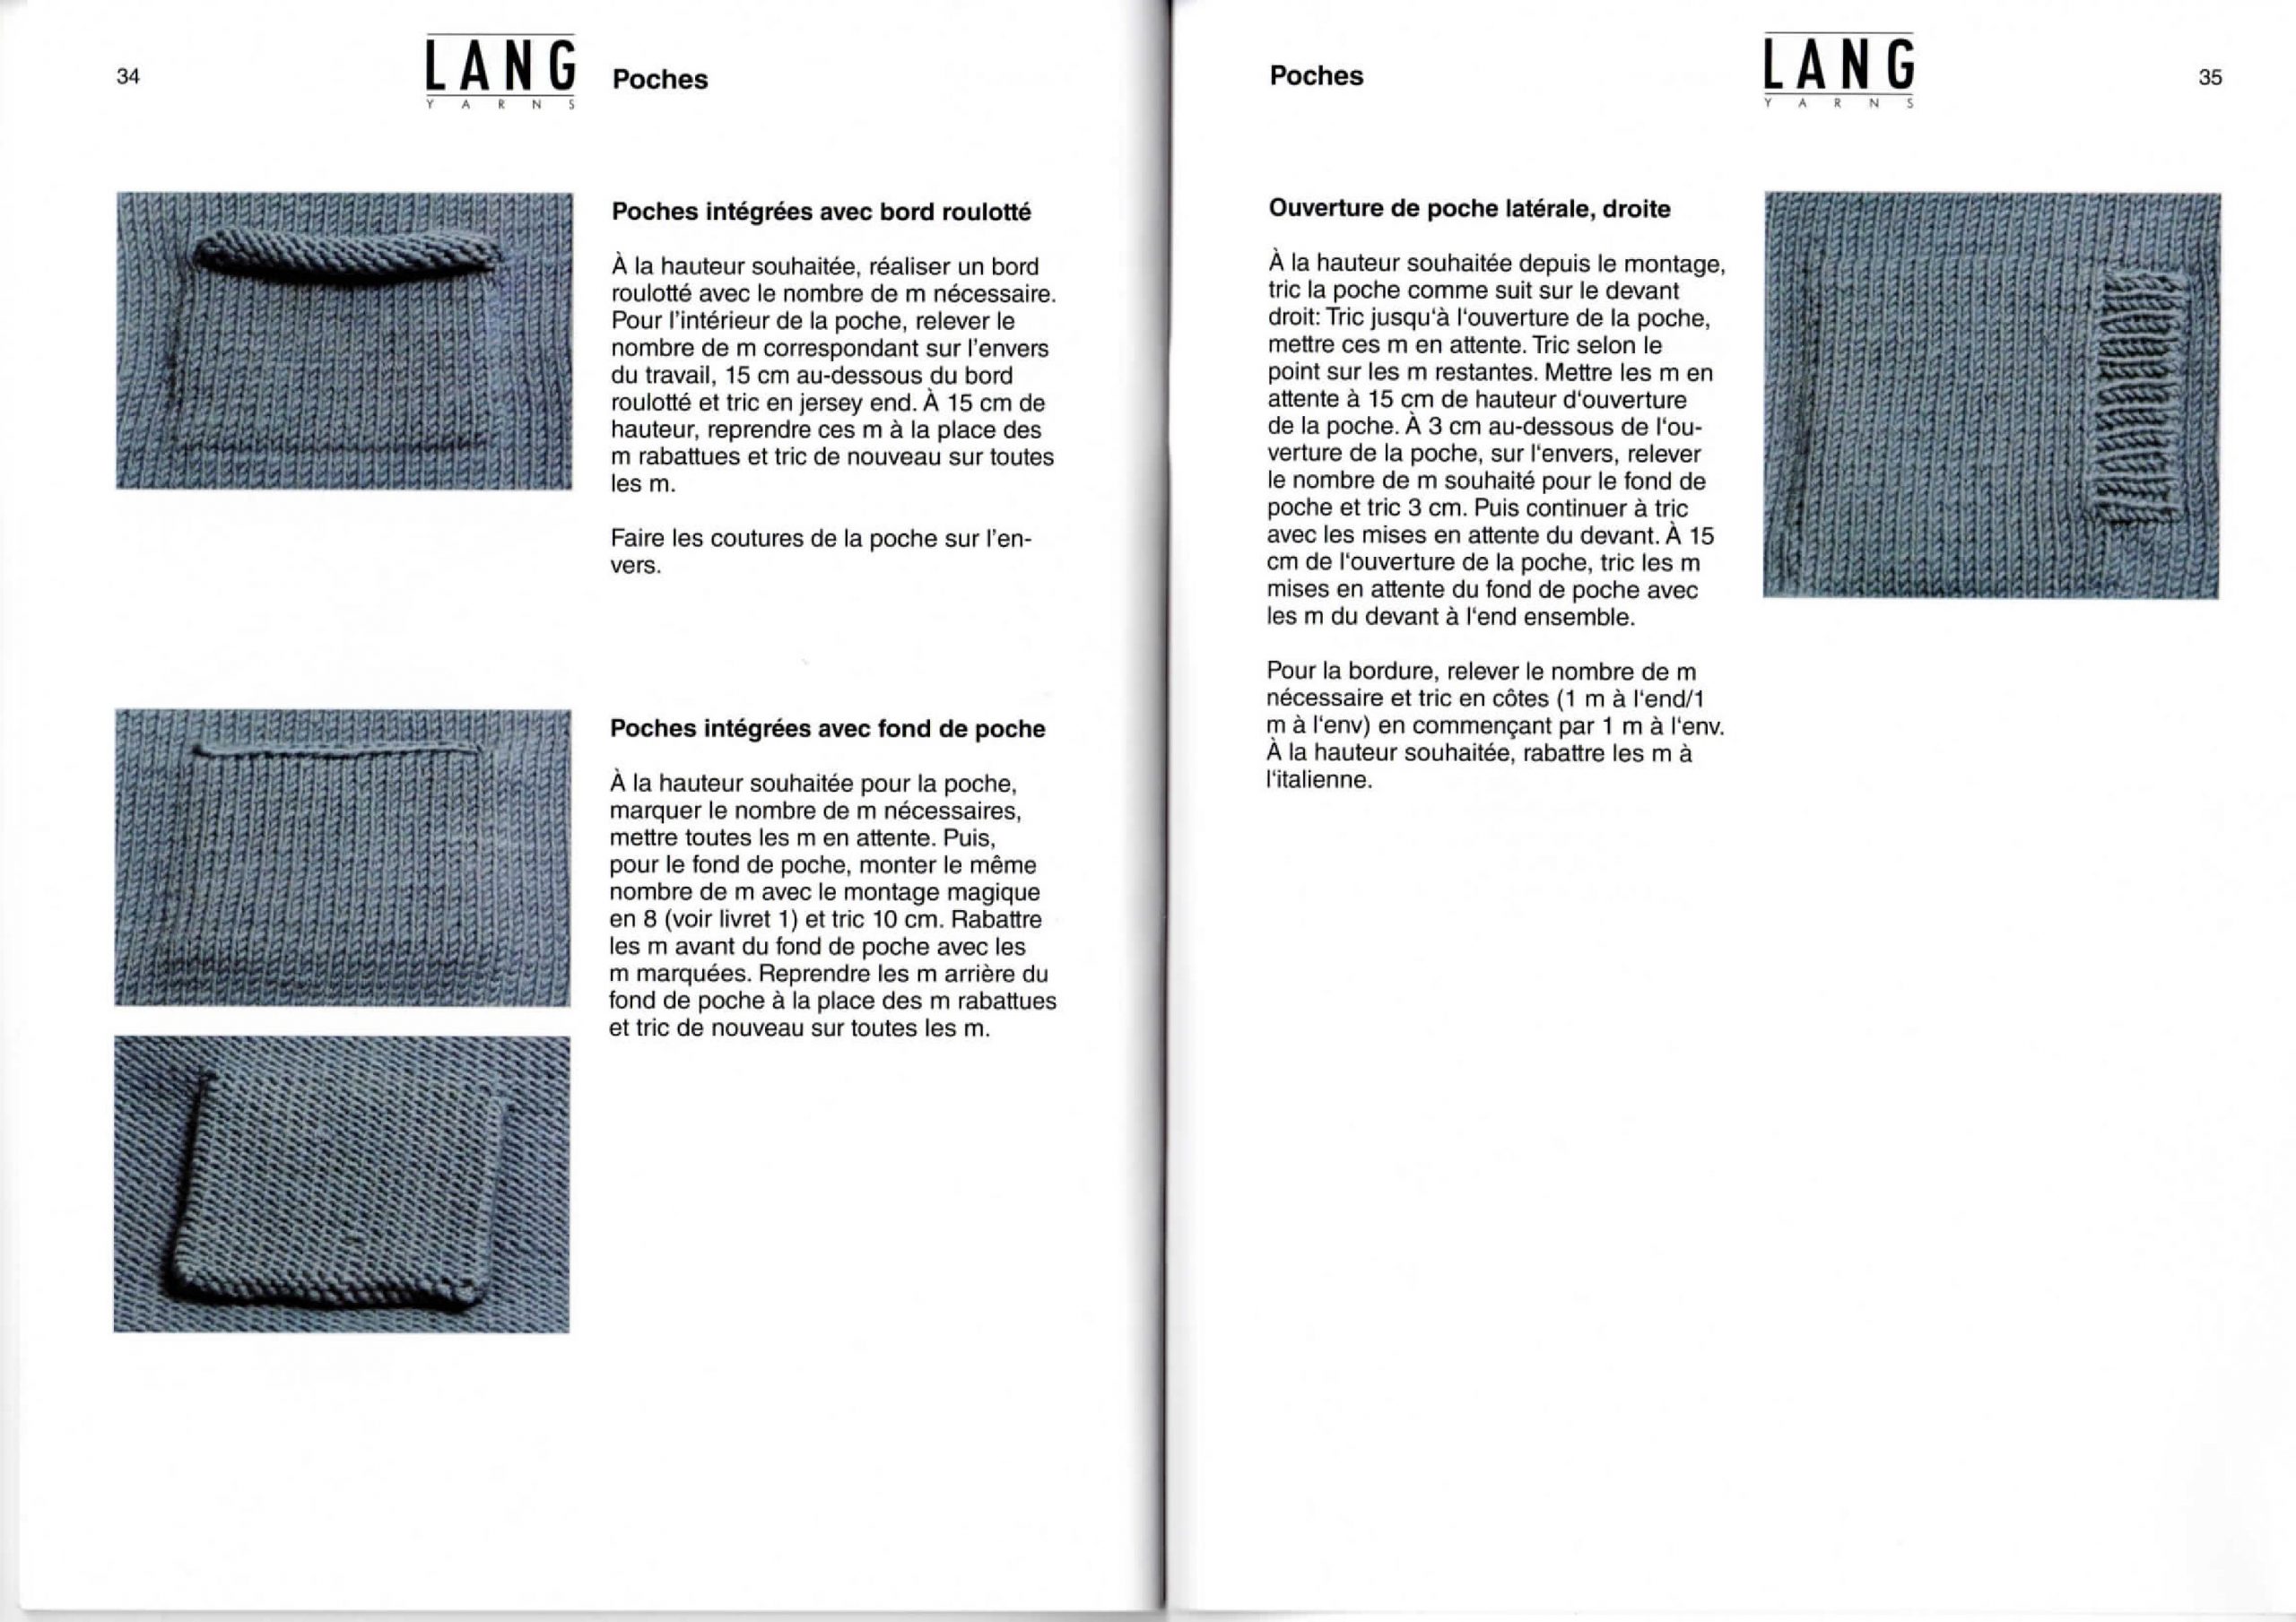 Livre tricot débutant, apprenez les bases - Le blog de Ladylaine